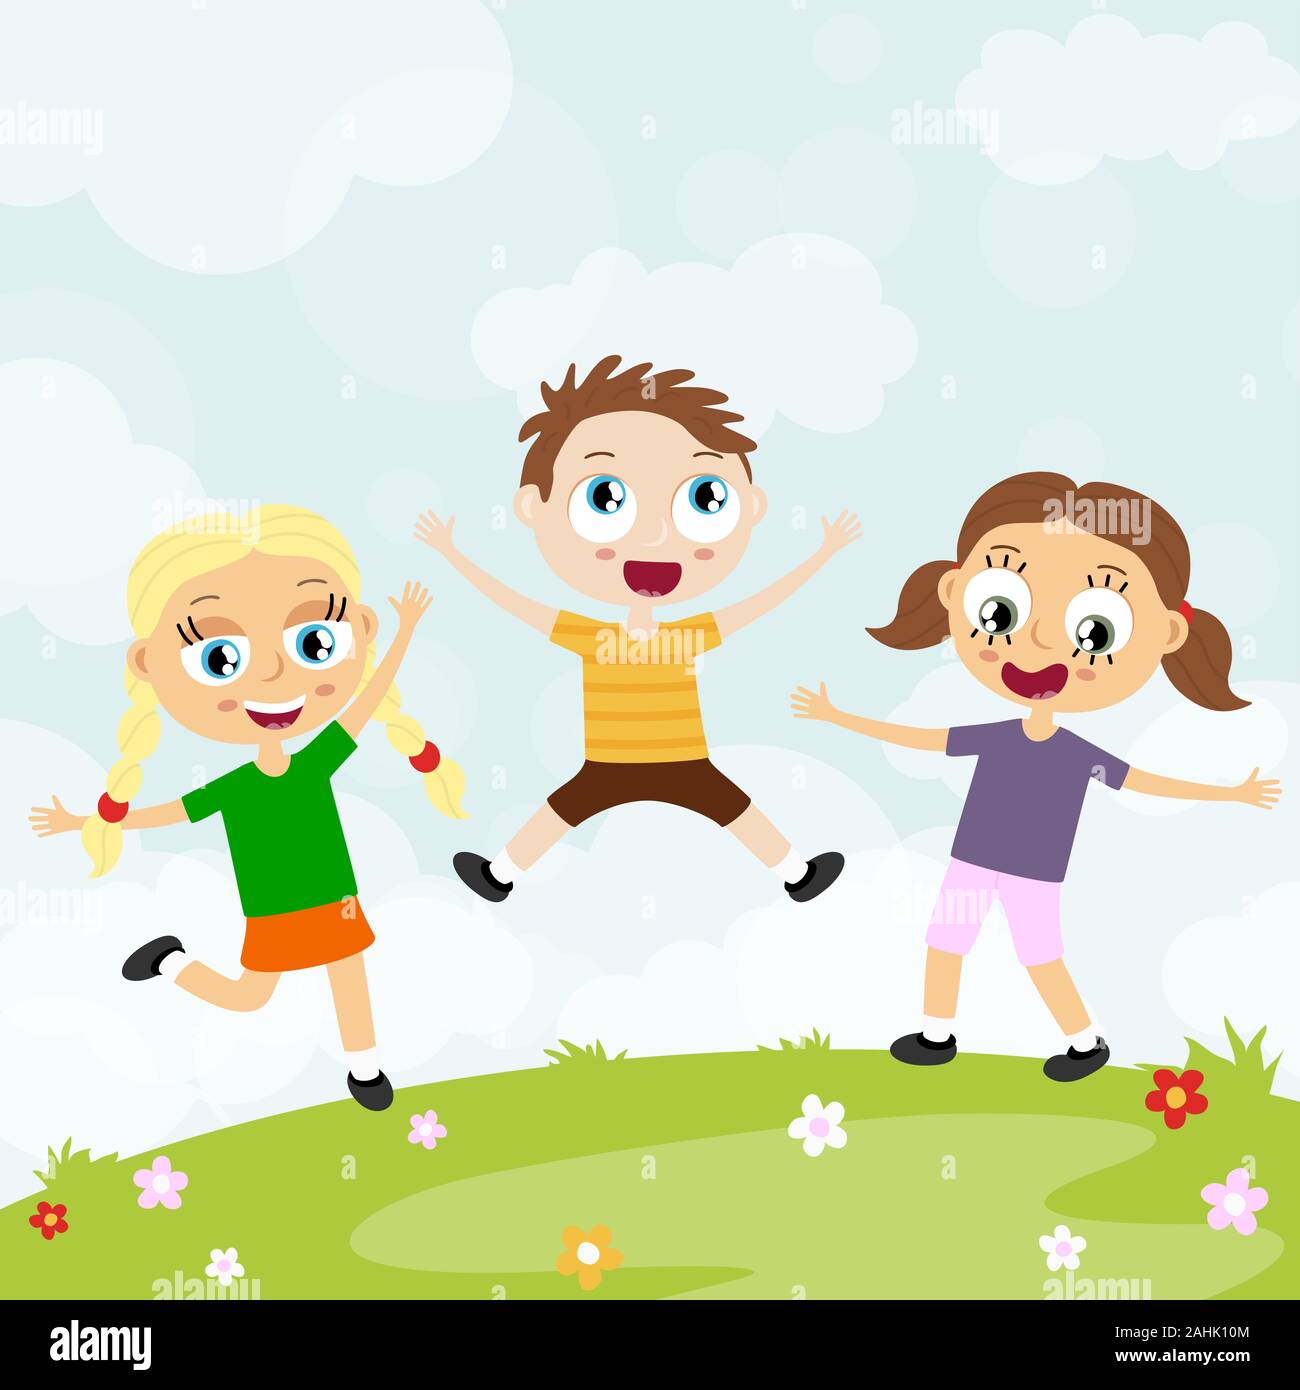 EPS 10 Vektordatei anzeigen glückliche junge Kinder mit unterschiedlichen Hautfarben, Jungen und Mädchen lachen, hüpfen, spielen und Spaß haben gemeinsam Vor s Stock Vektor